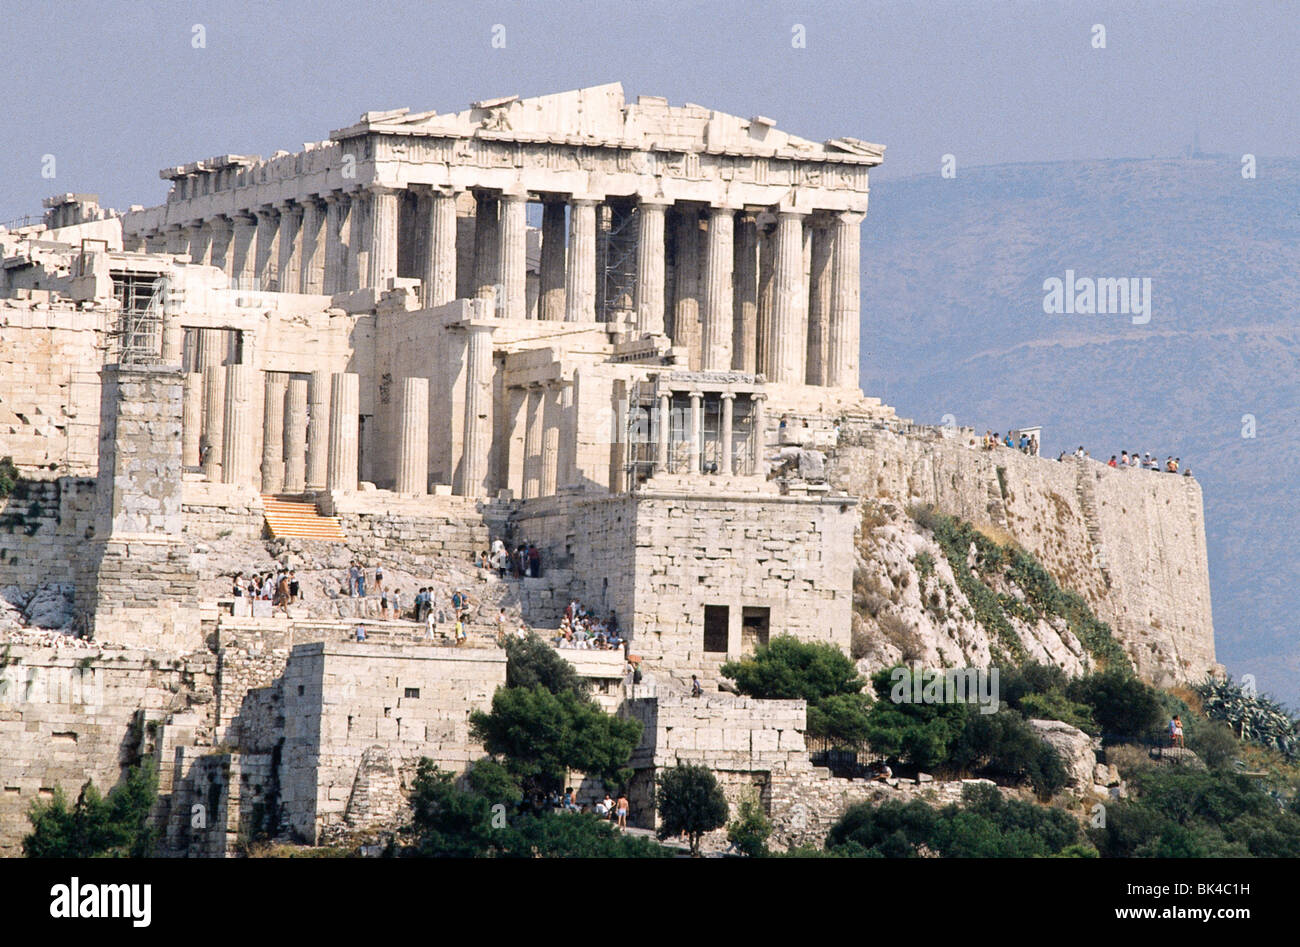 Parthenon in Athens, Greece Stock Photo